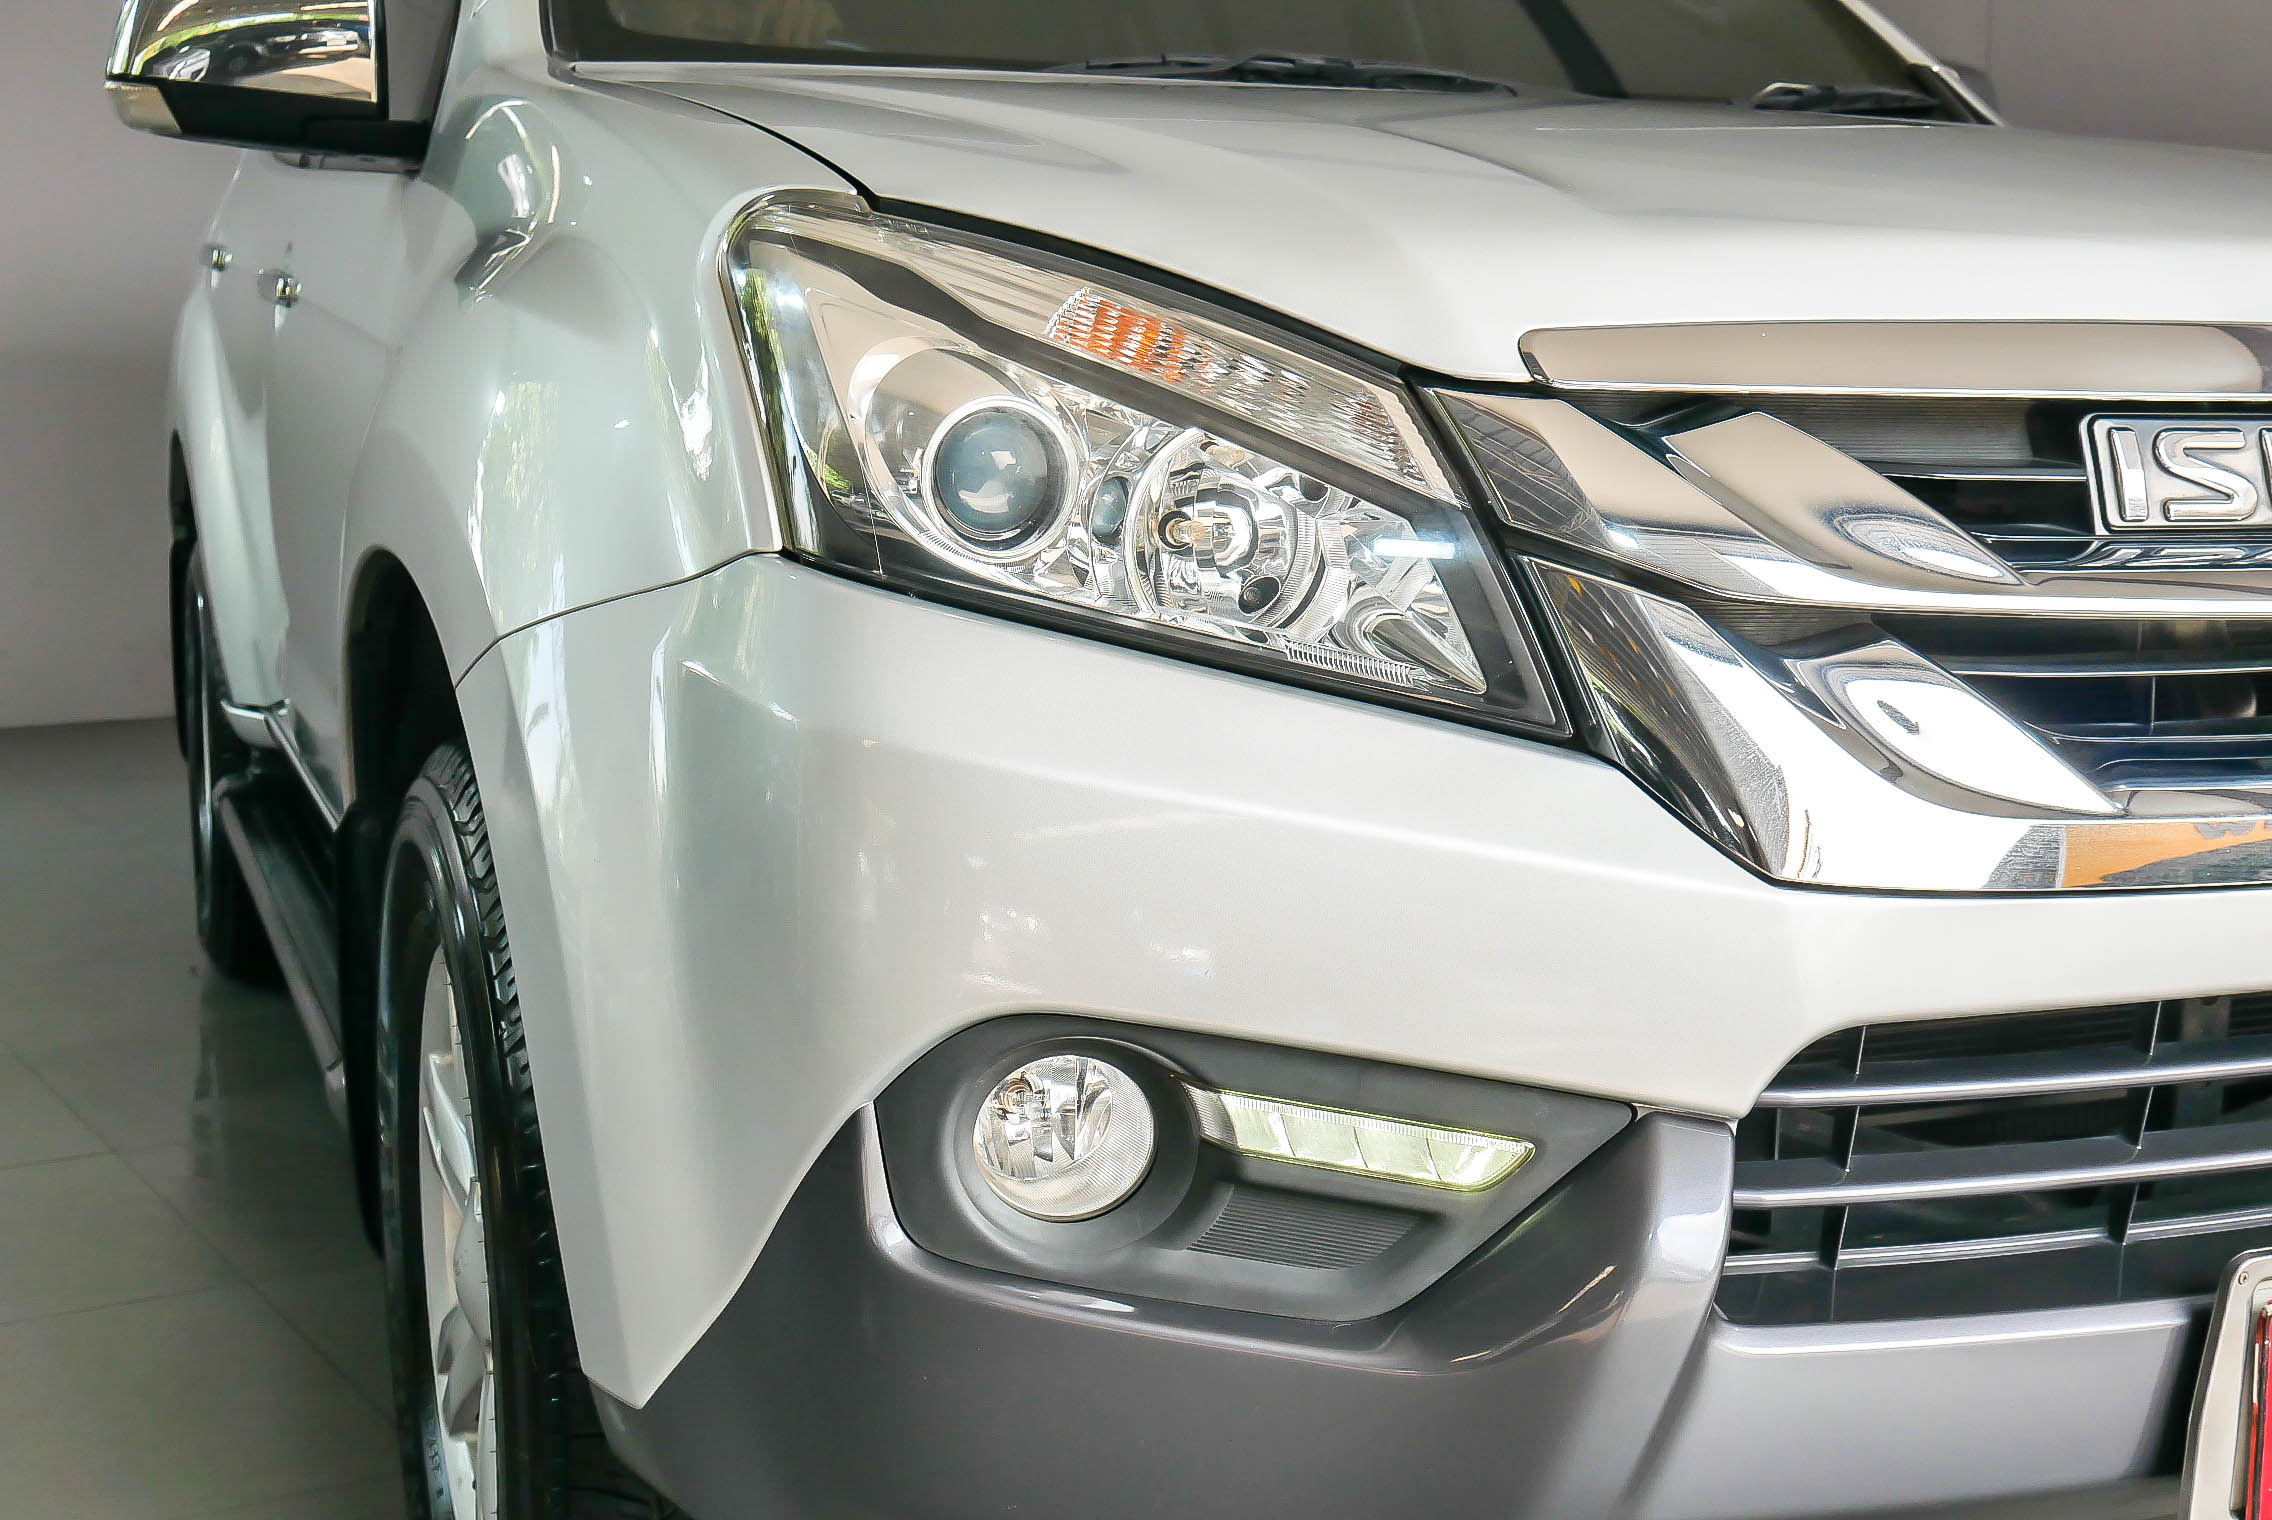 ISUZU MU-X 3.0 NAVI 4WD AT 2014 สีเงิน